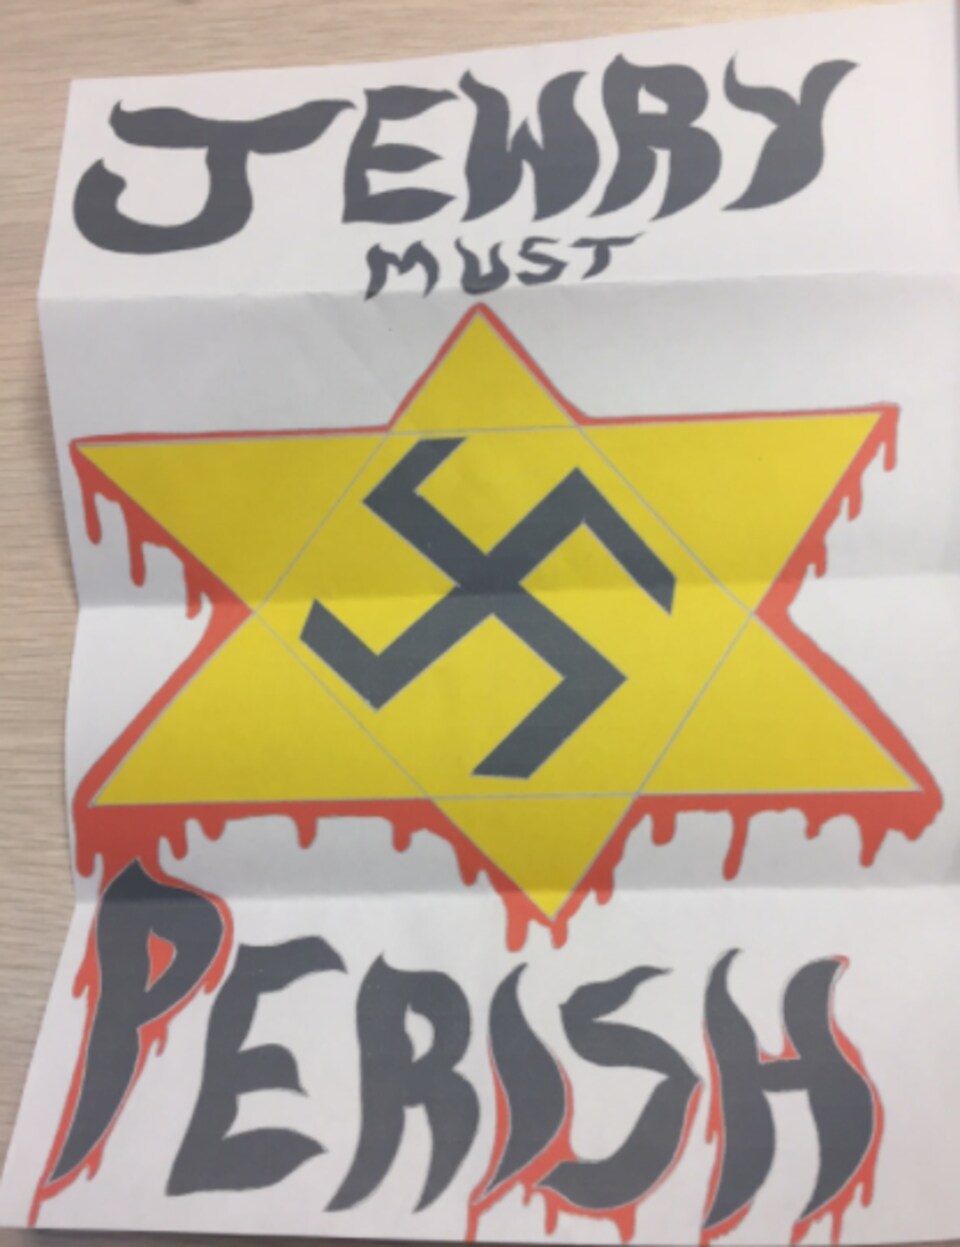 La lettre reçue dans les synagogues lundi, deux à Montréal, une à Toronto